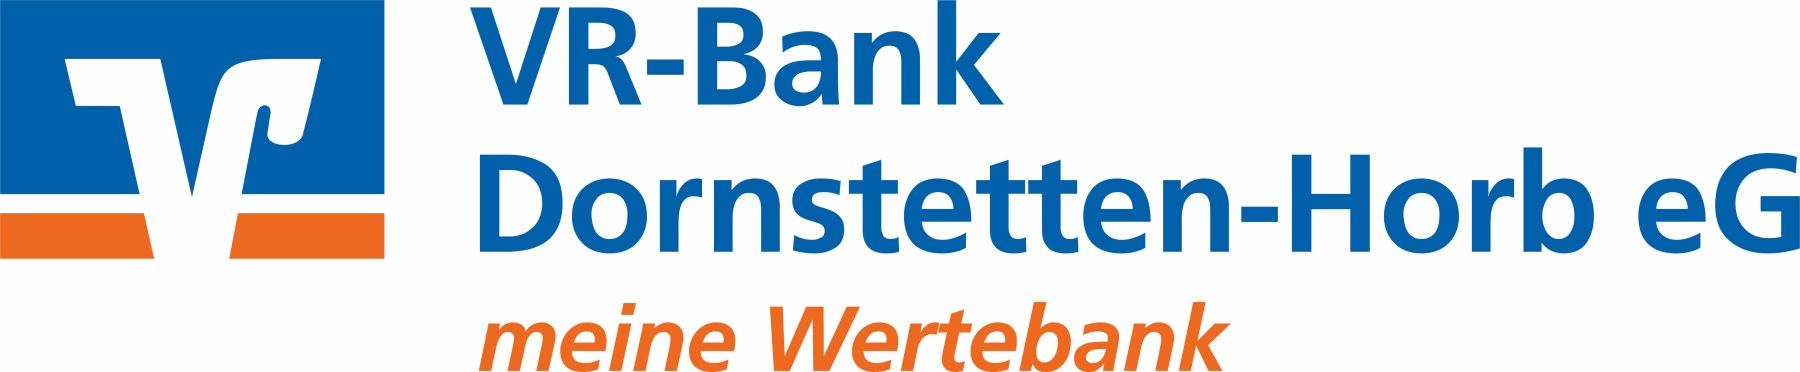 Logo-links-VR-Bank-Dornstetten-Horb.002.002